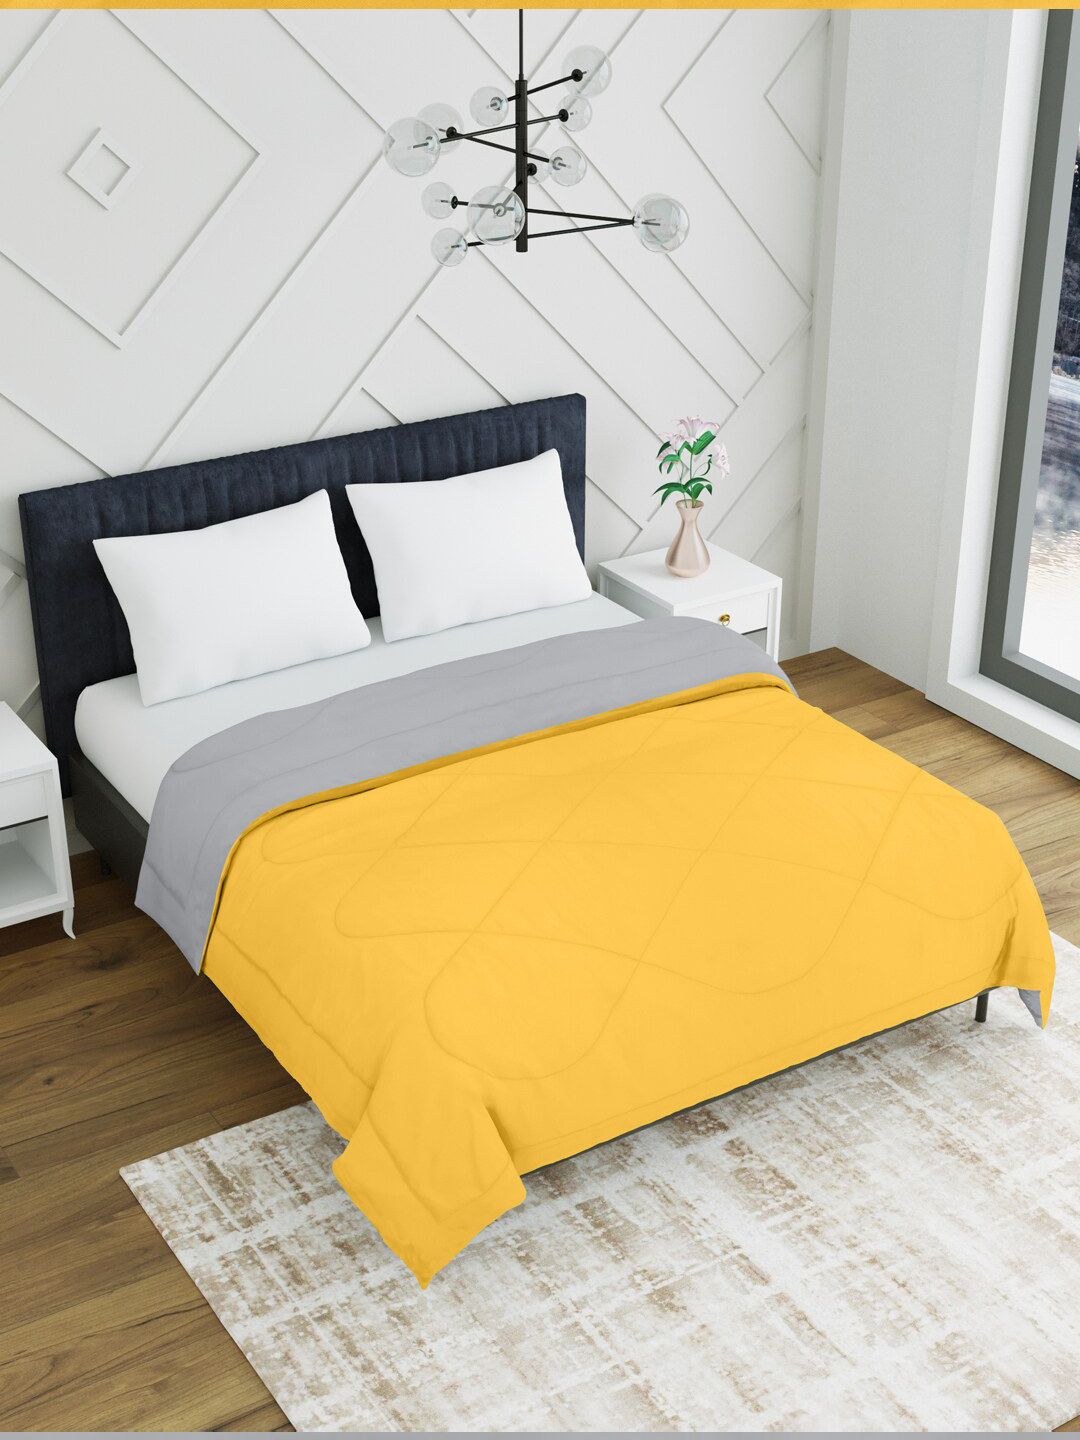 EverHOME Grey & Orange Microfiber Mild Winter Double Bed Comforter Price in India